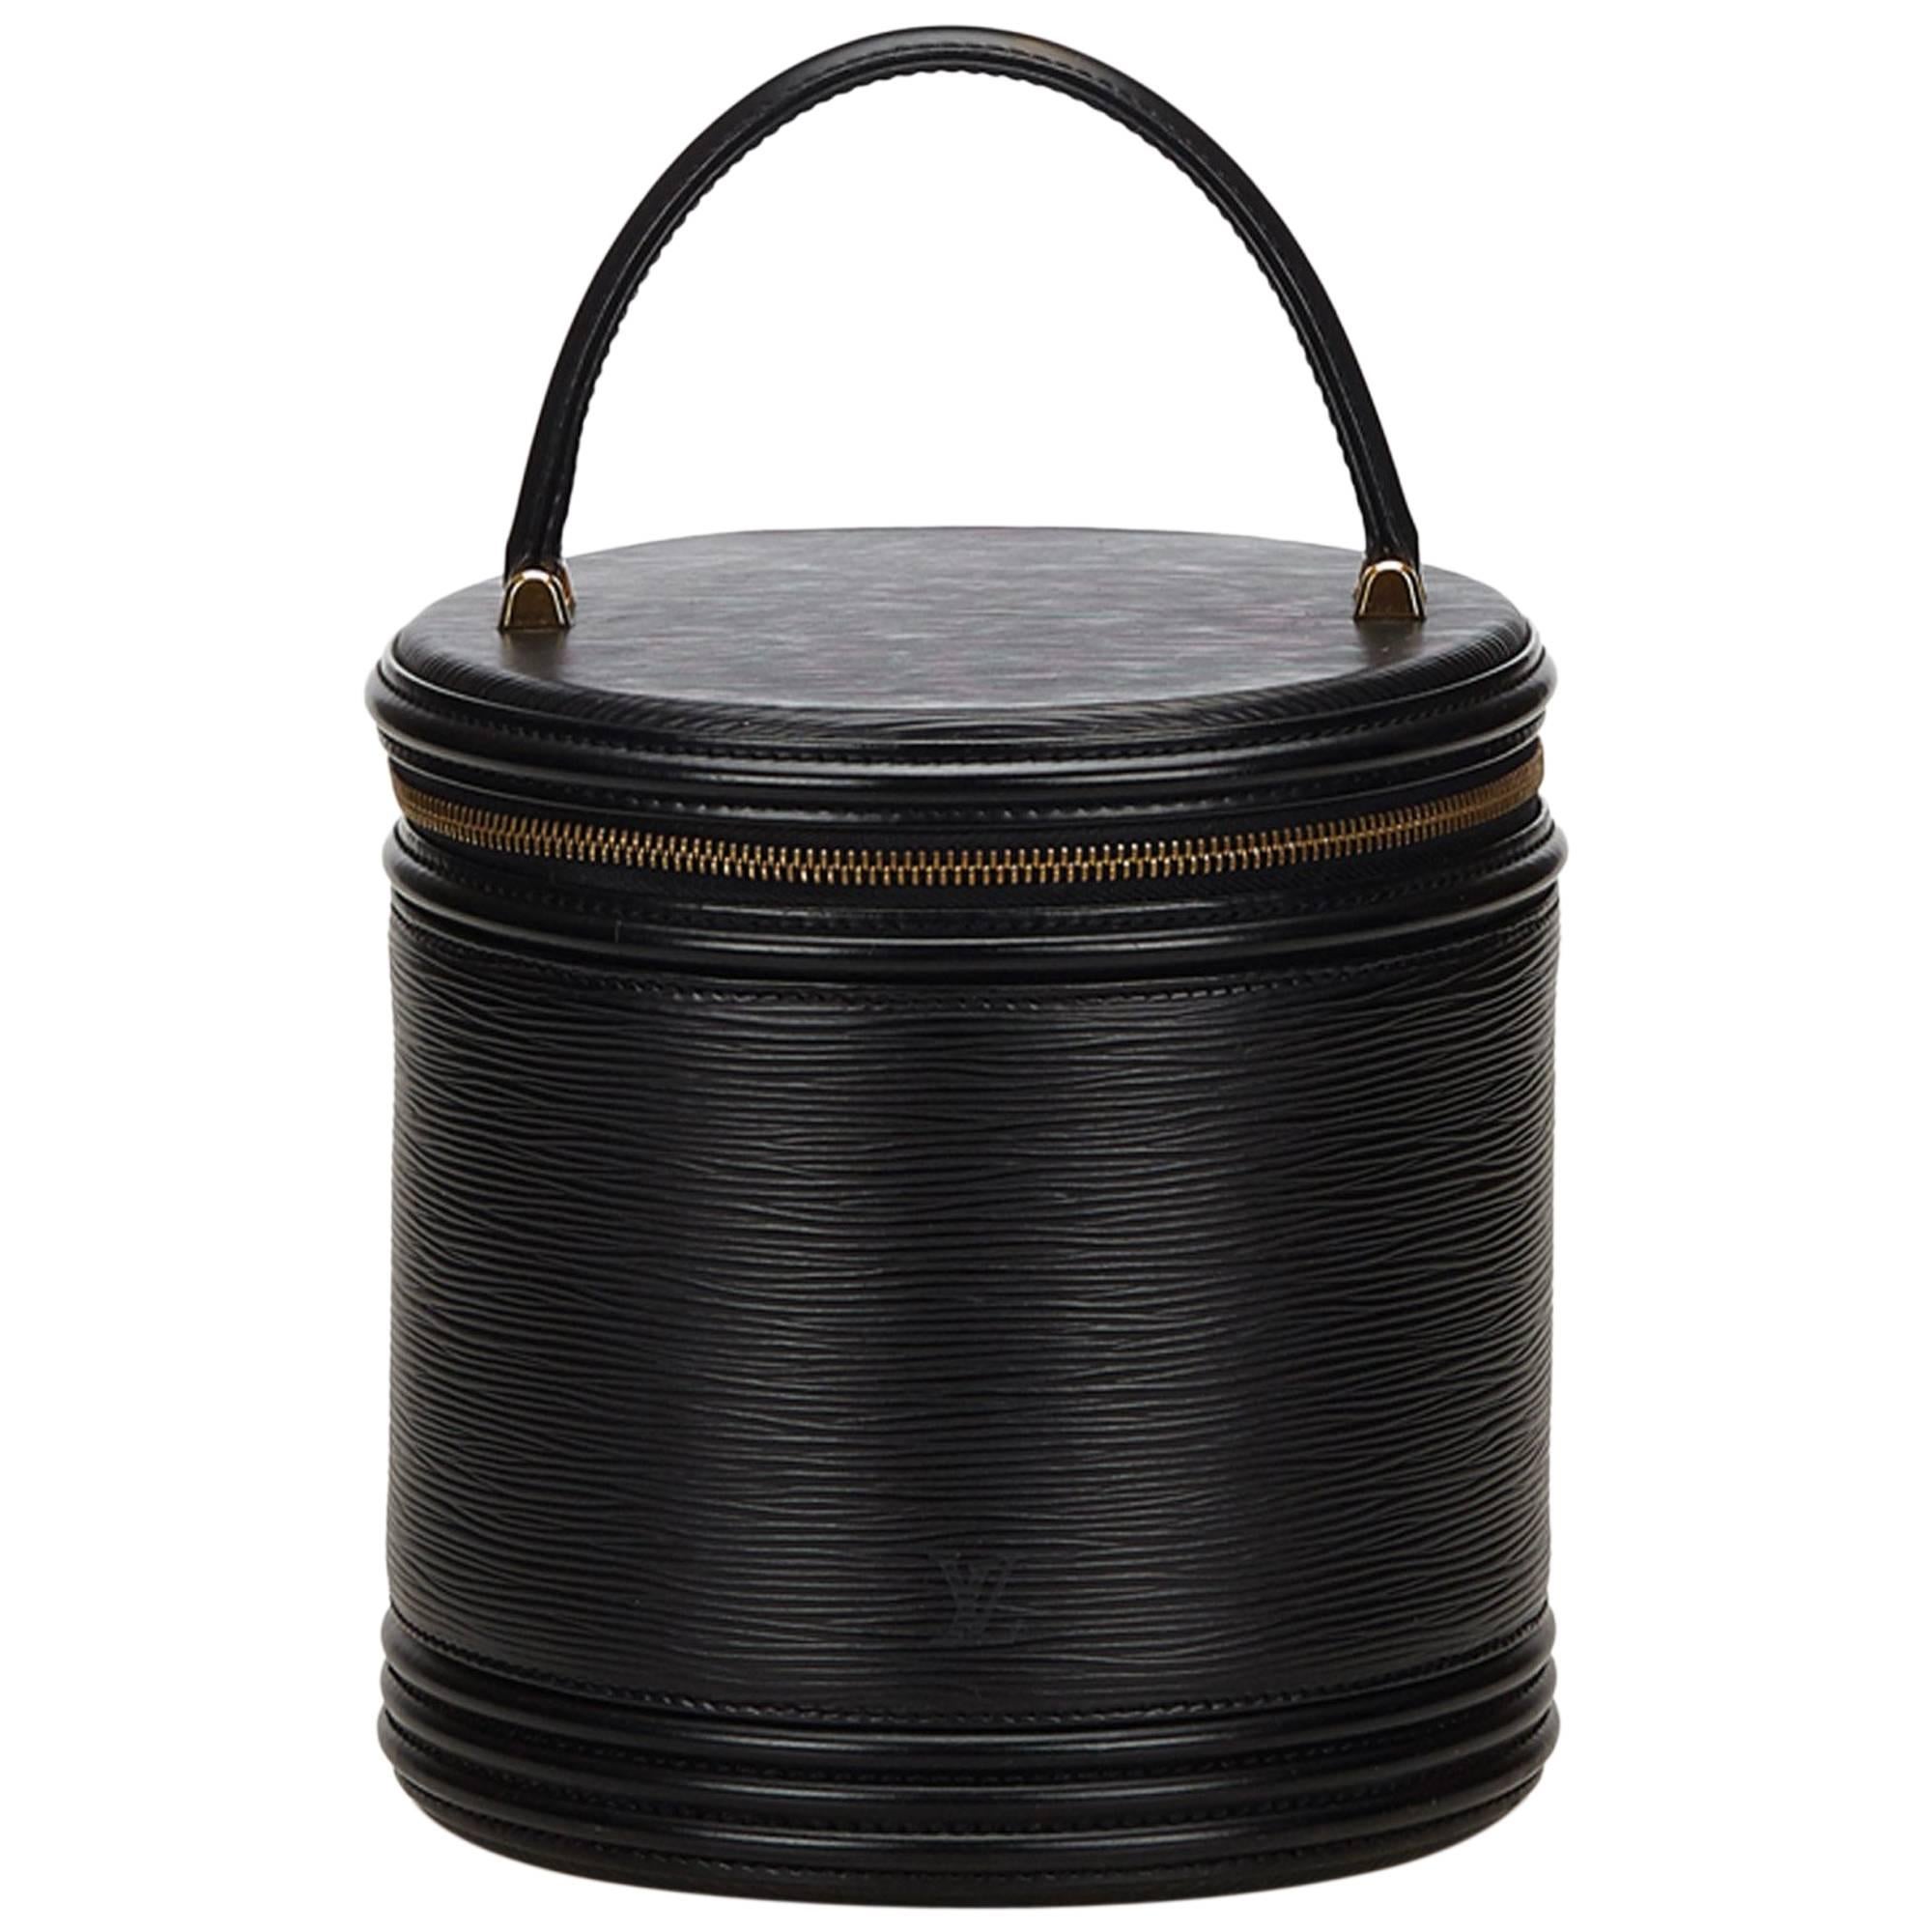 Sold at Auction: A Louis Vuitton Black Epi Leather Tablet Case